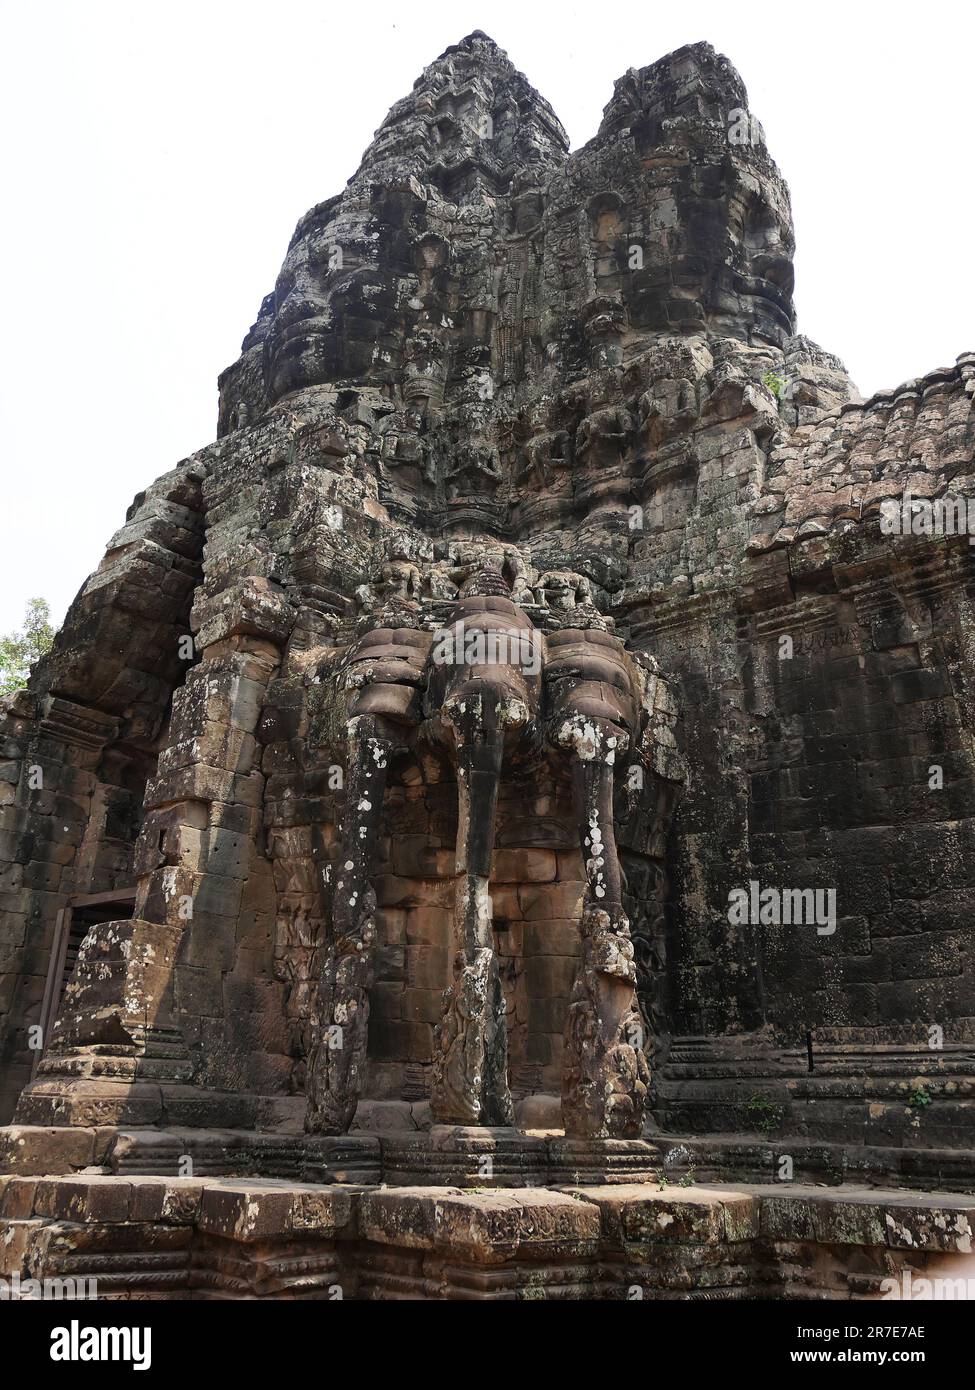 Il Tempio di Angkor Thom, la Provincia di Siem Reap, il complesso del Tempio di Angkor, patrimonio mondiale dell'UNESCO nel 1192, costruito dal Re Jayavarman VII tra Foto Stock